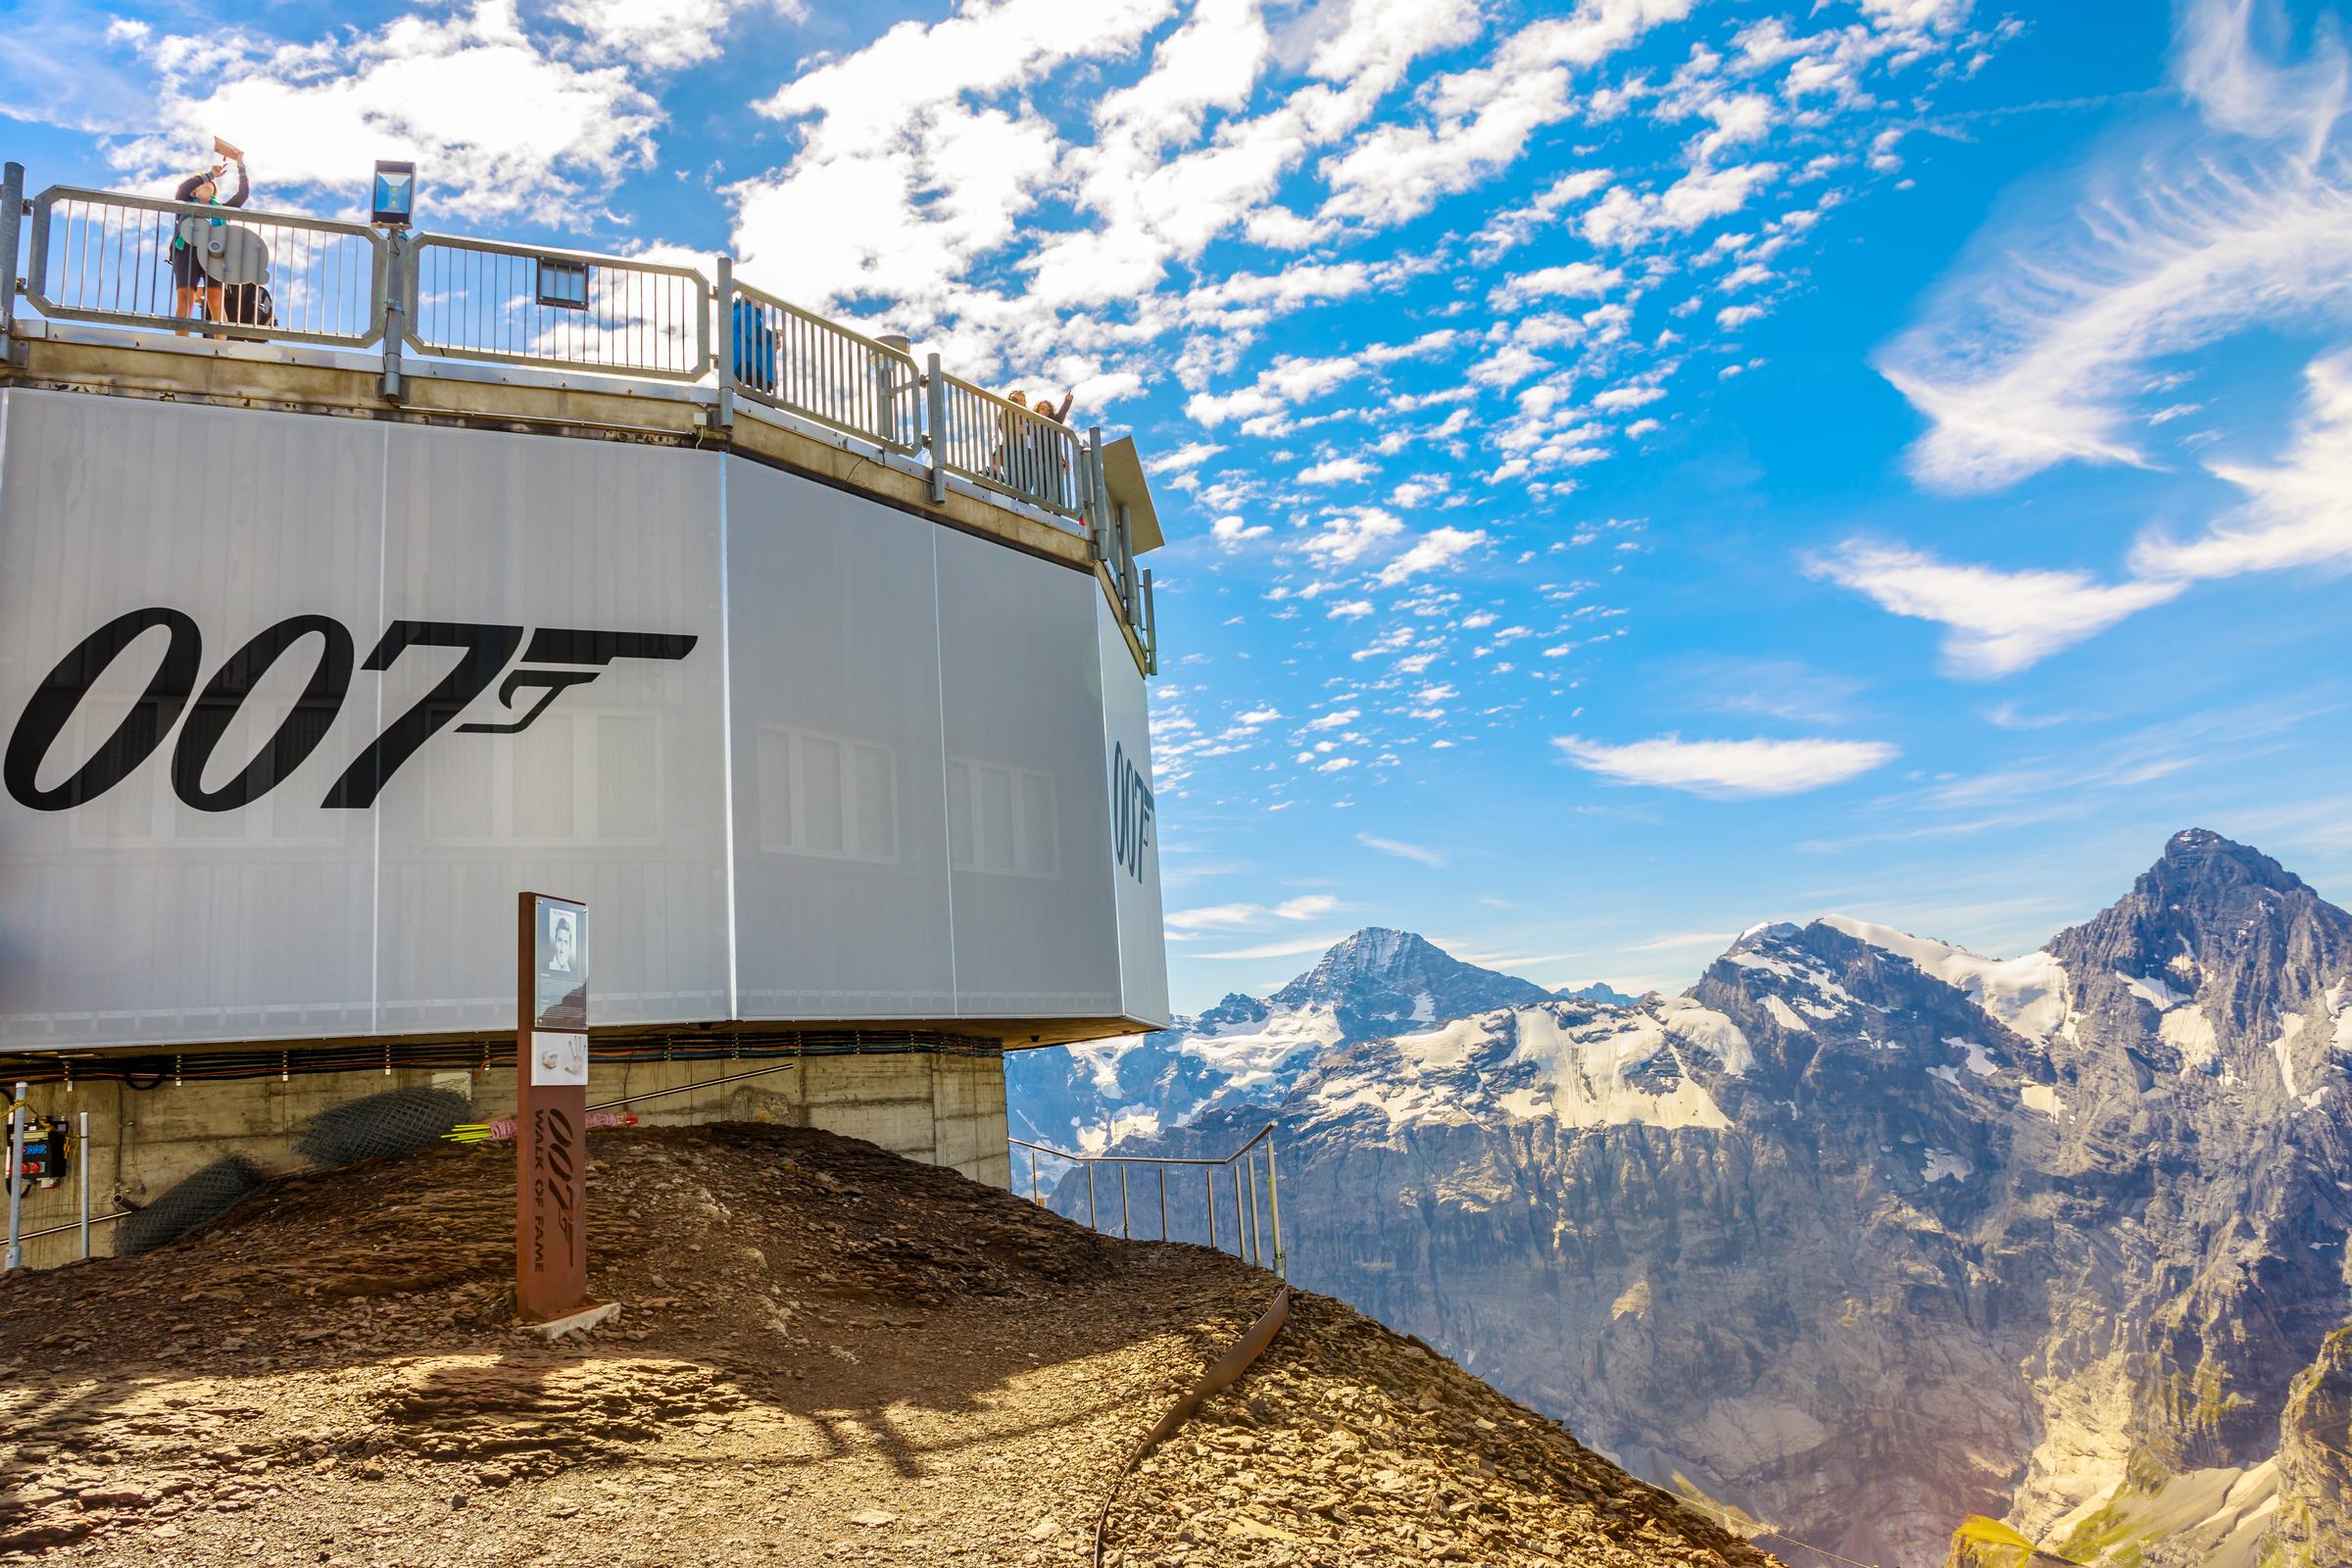 Eine Aussichtsplattform am Piz Gloria auf 2970 Metern, dem Gipfel des Schilthorns, der durch den James-Bond-Film 007 bekannt wurde, am 19. August 2020. | Quelle: Getty Images